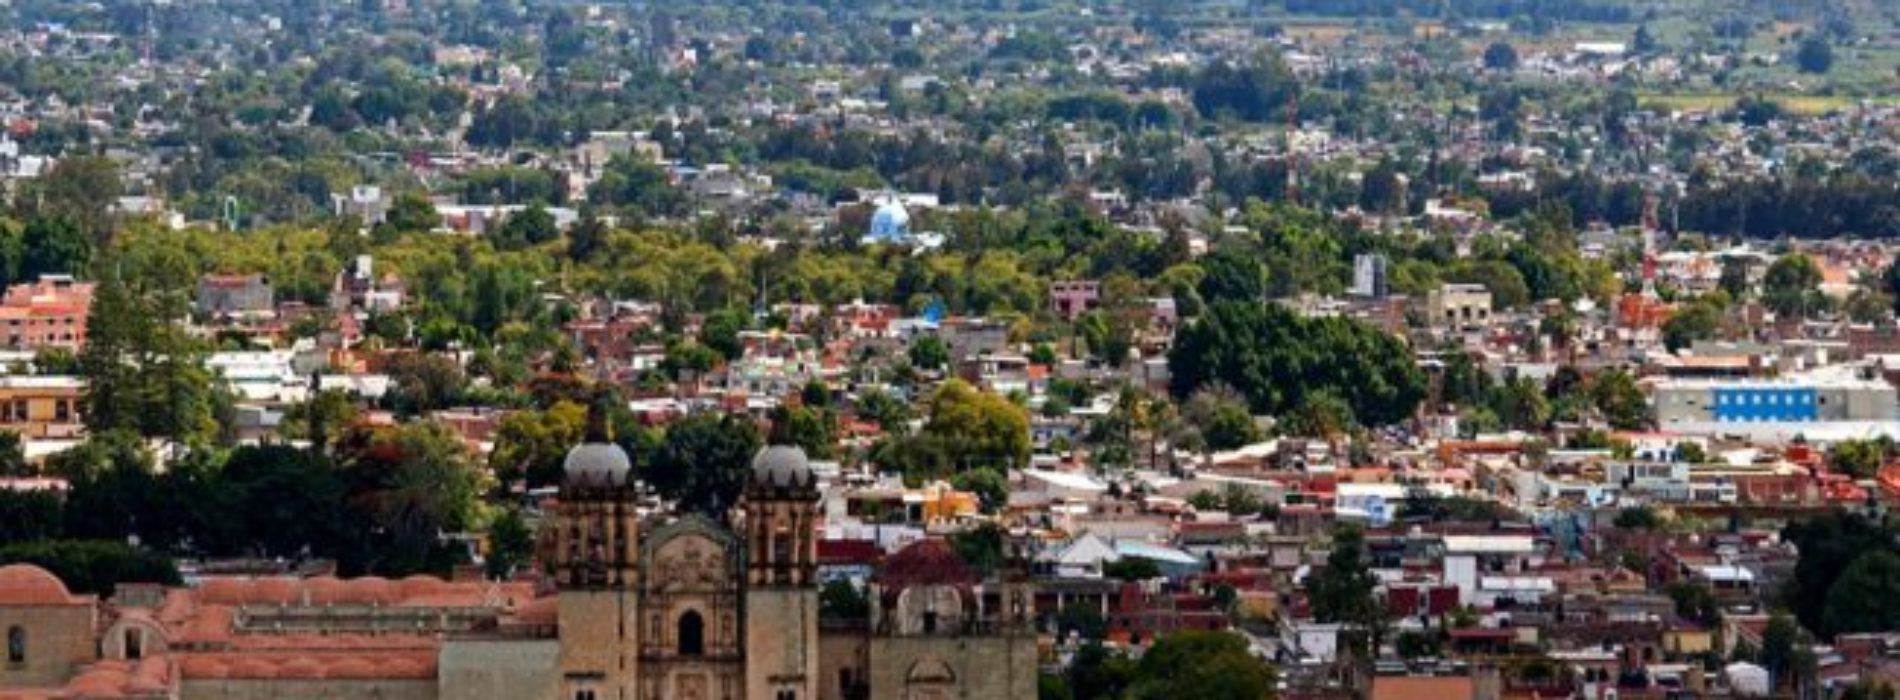 Oaxaca, entre las 14 mejores ciudades coloniales de
México